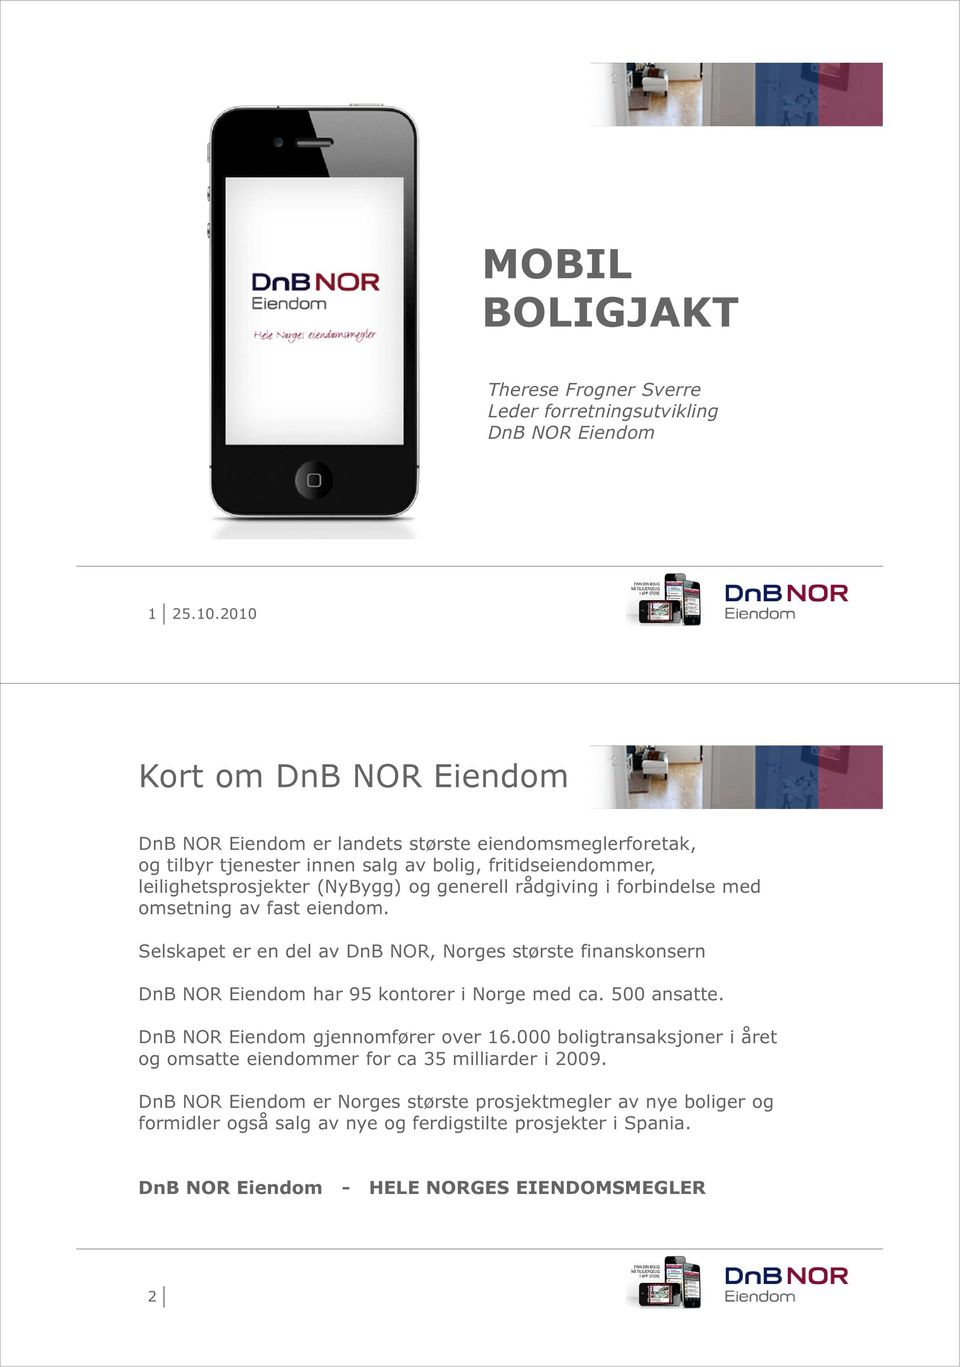 Selskapet er en del av DnB NOR, Norges største finanskonsern DnB NOR Eiendom har 95 kontorer i Norge med ca. 500 ansatte. DnB NOR Eiendom gjennomfører over 16.